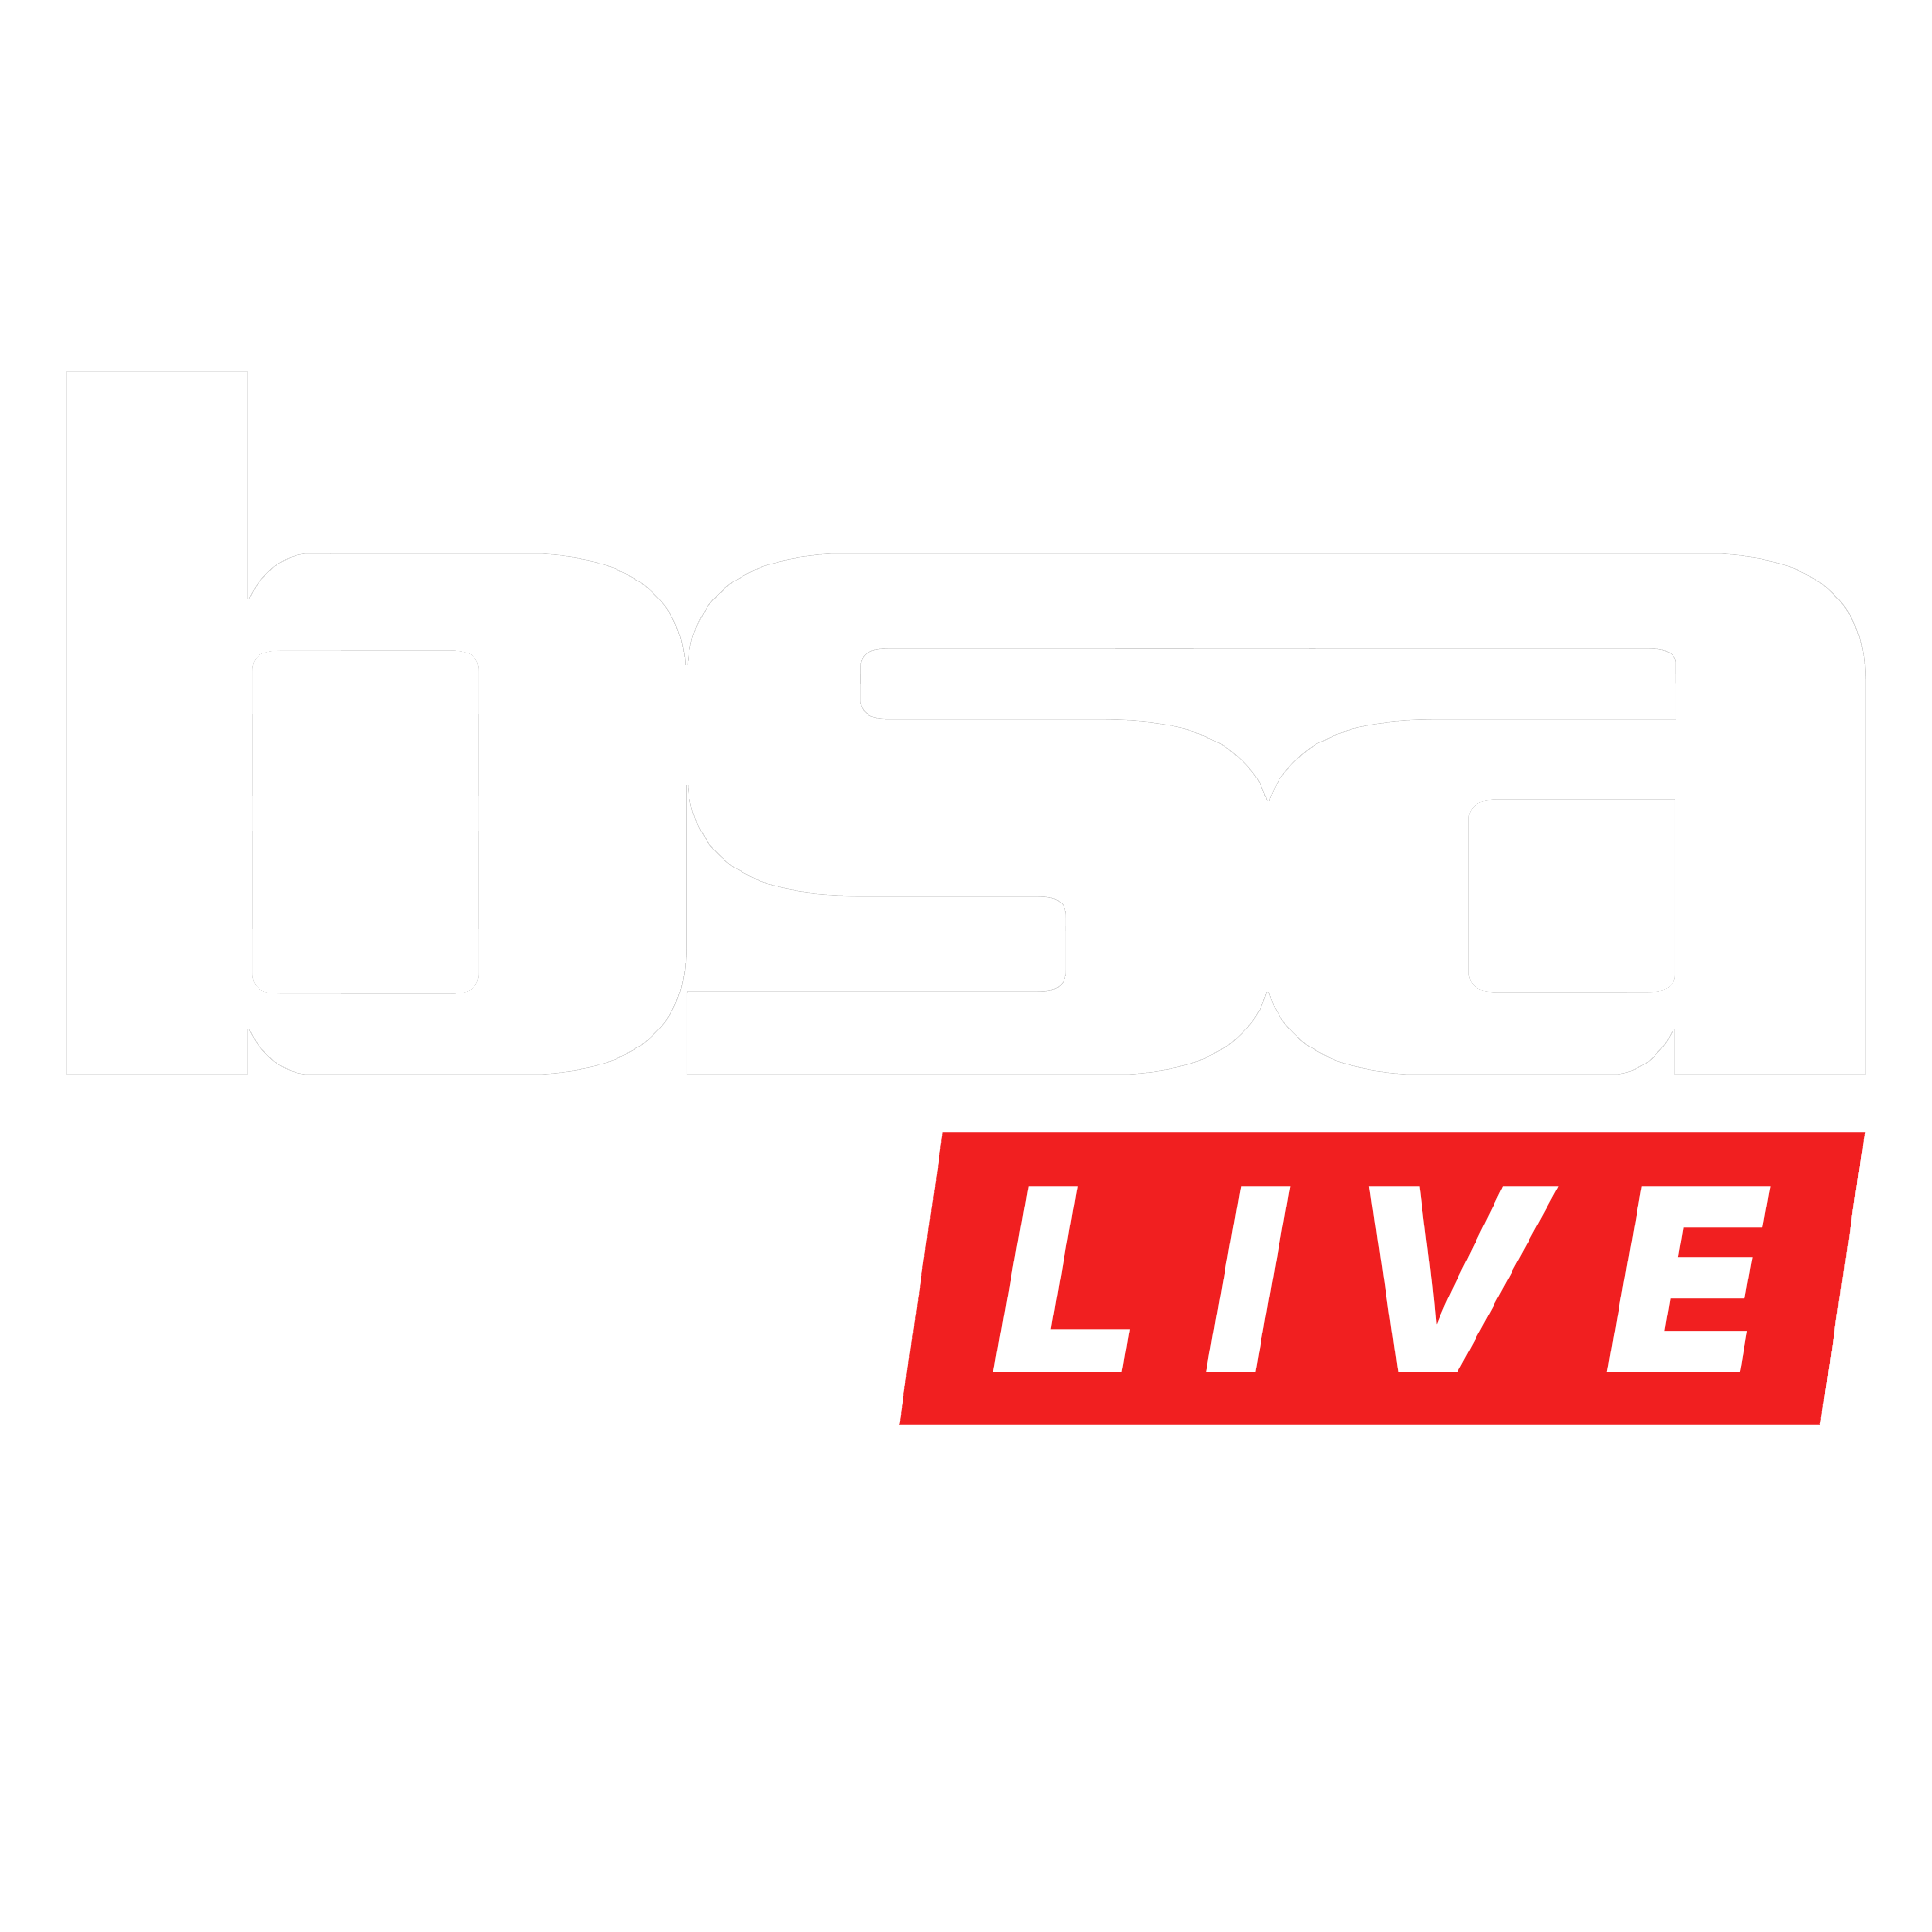 BSA live logo